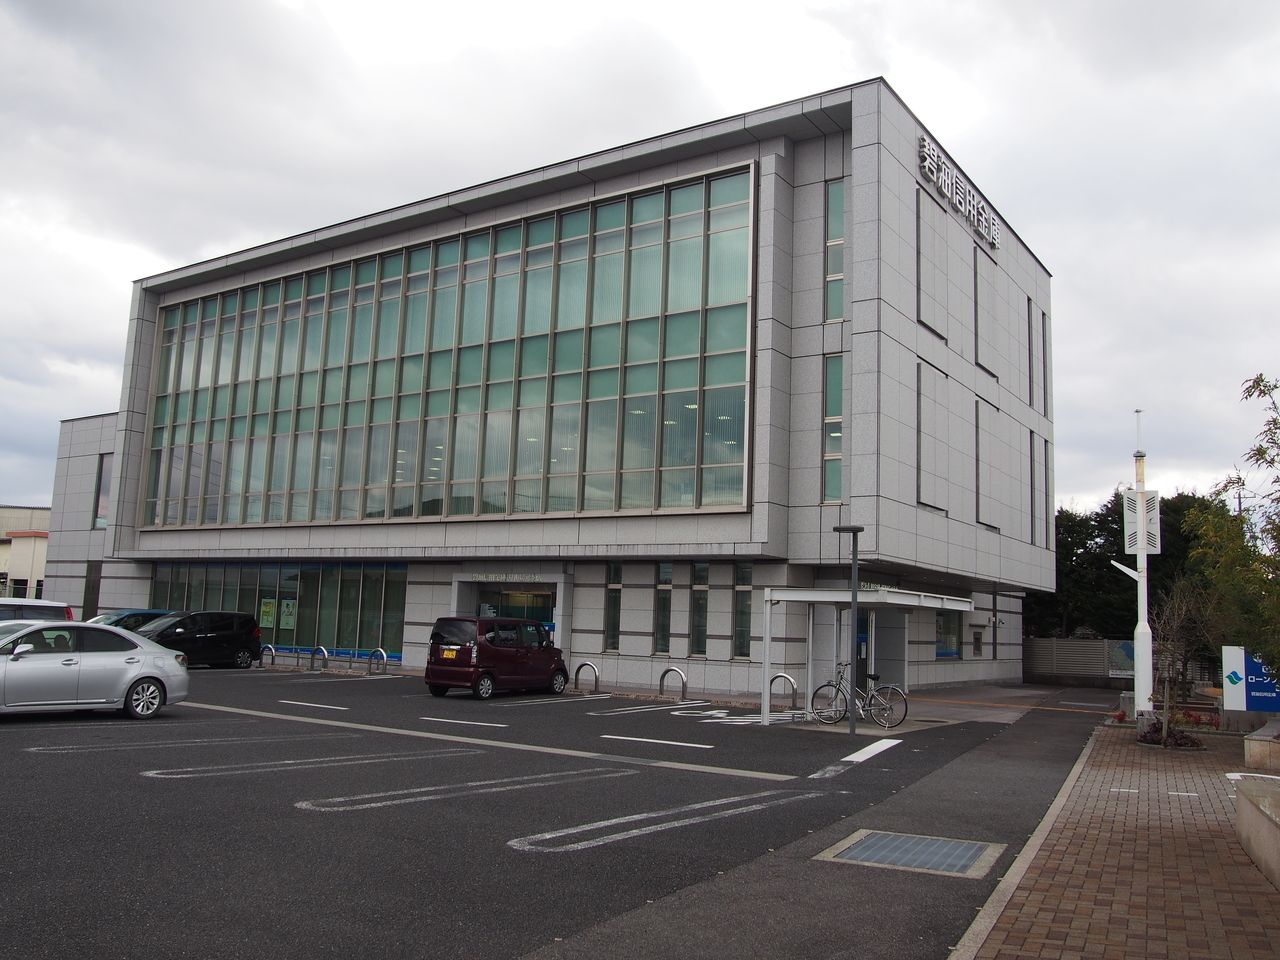 碧海信用金庫は、愛知県安城市に本店を置く信用金庫。愛知県内の信用金庫において預金残高ベースでは岡崎信用金庫に次ぐ規模です。住宅ローンでは、トヨタ系社員向けの住宅ローンがあり、金利・保証料なども低く設定されています。